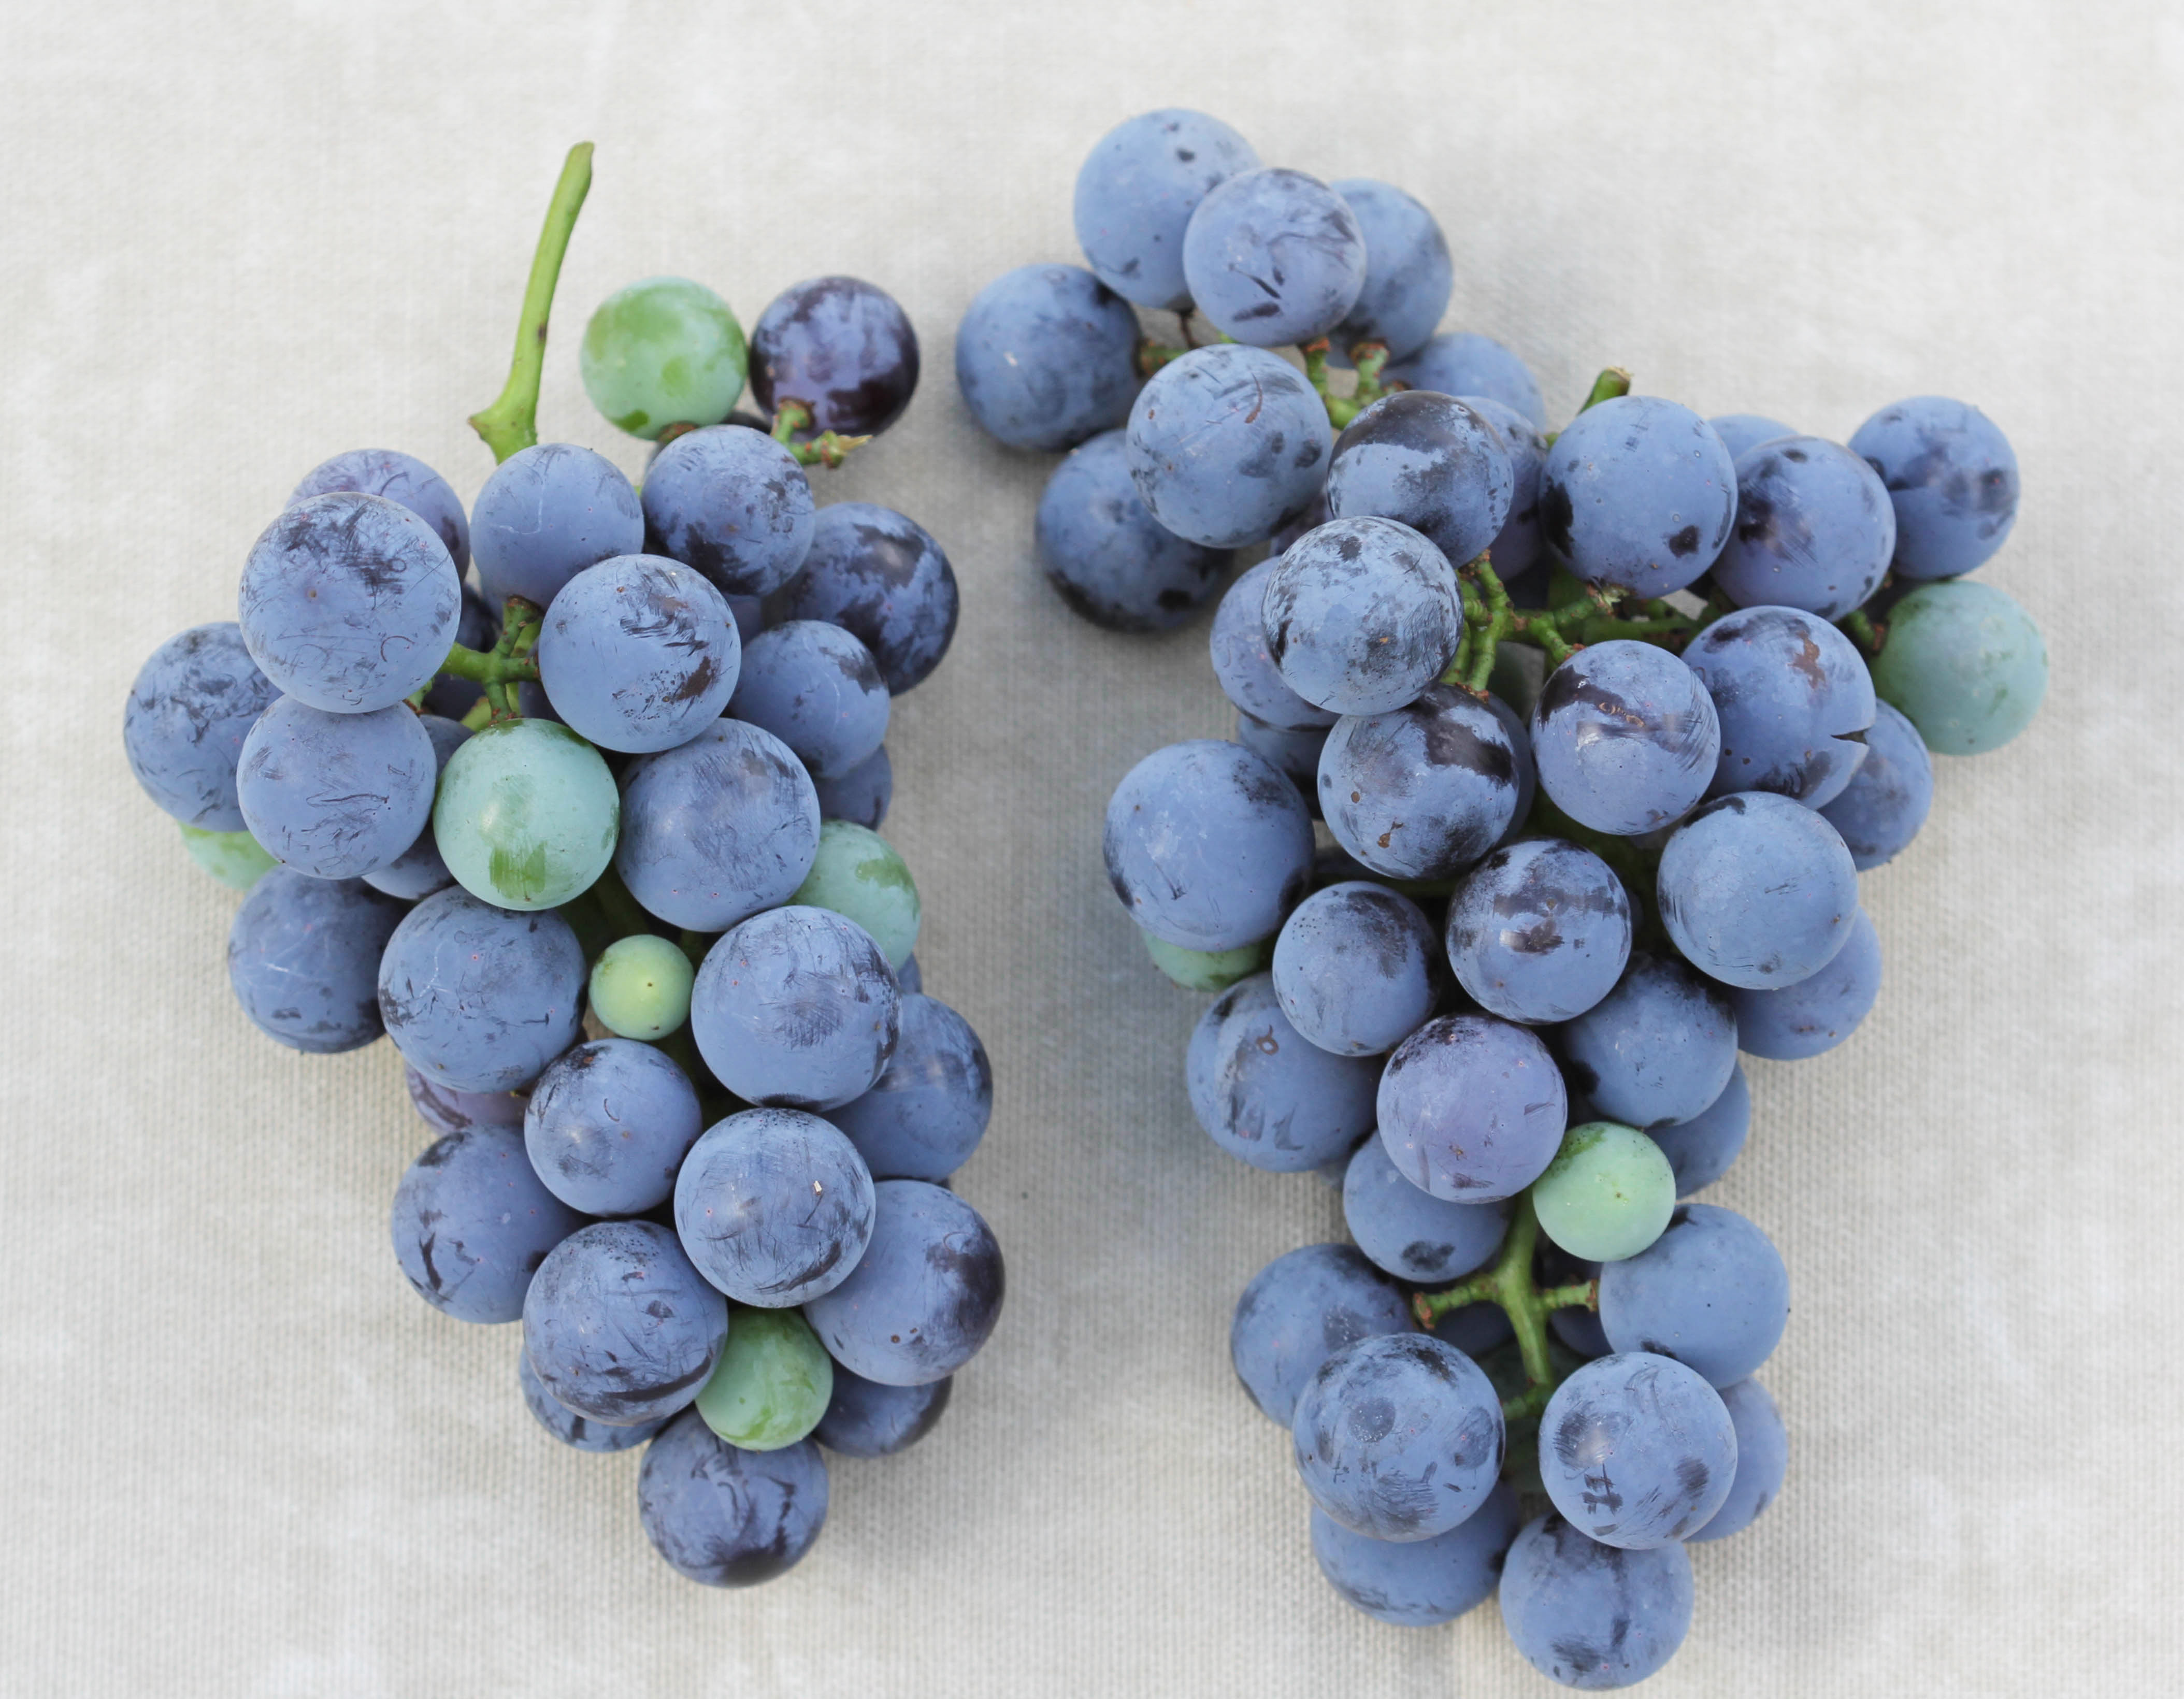 Uneven ripening in 'Concord' grape. 